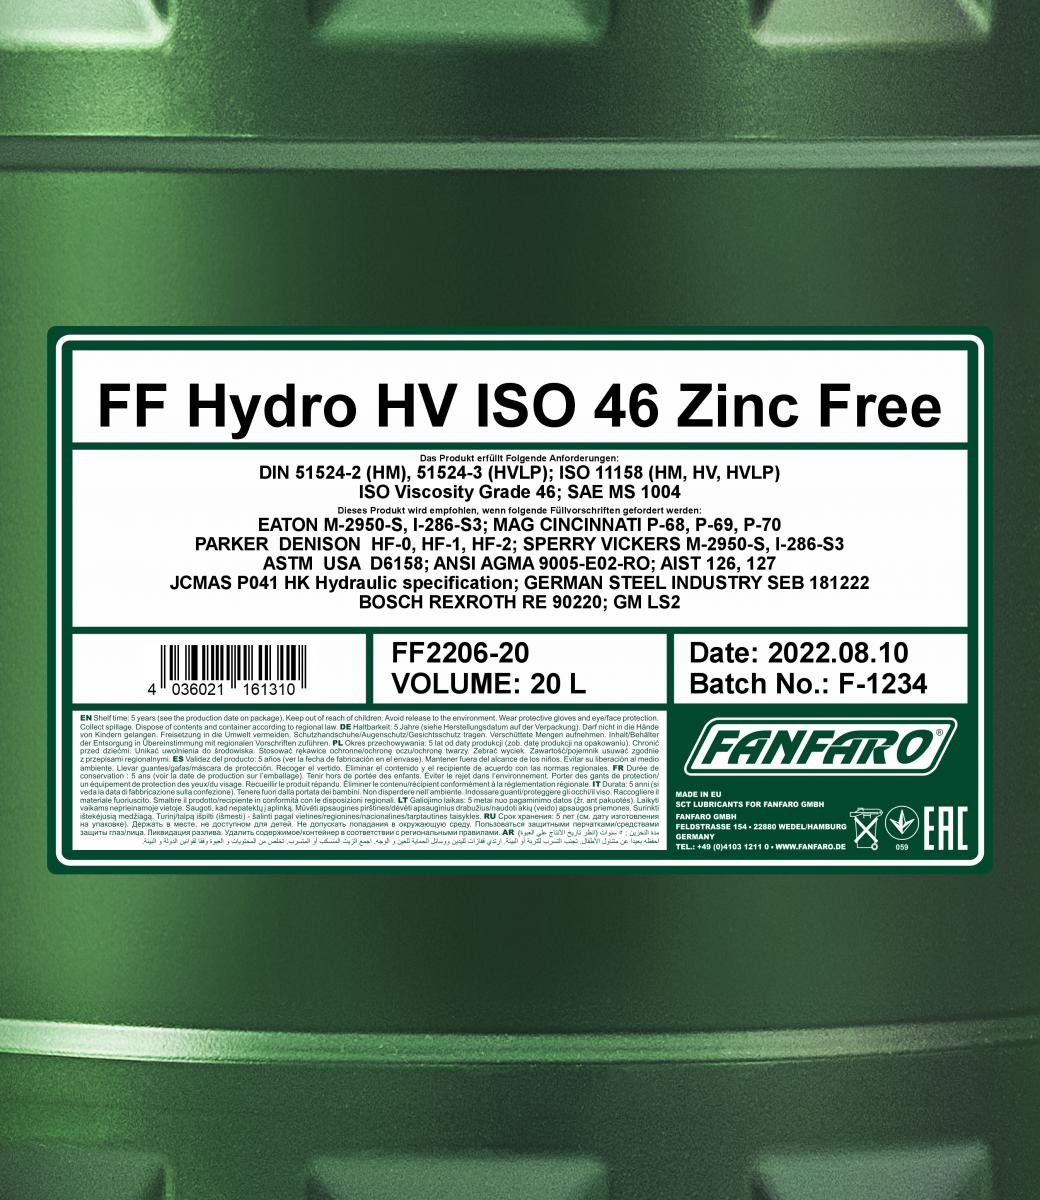 FANFARO Hydraulic fluid FF2206-20